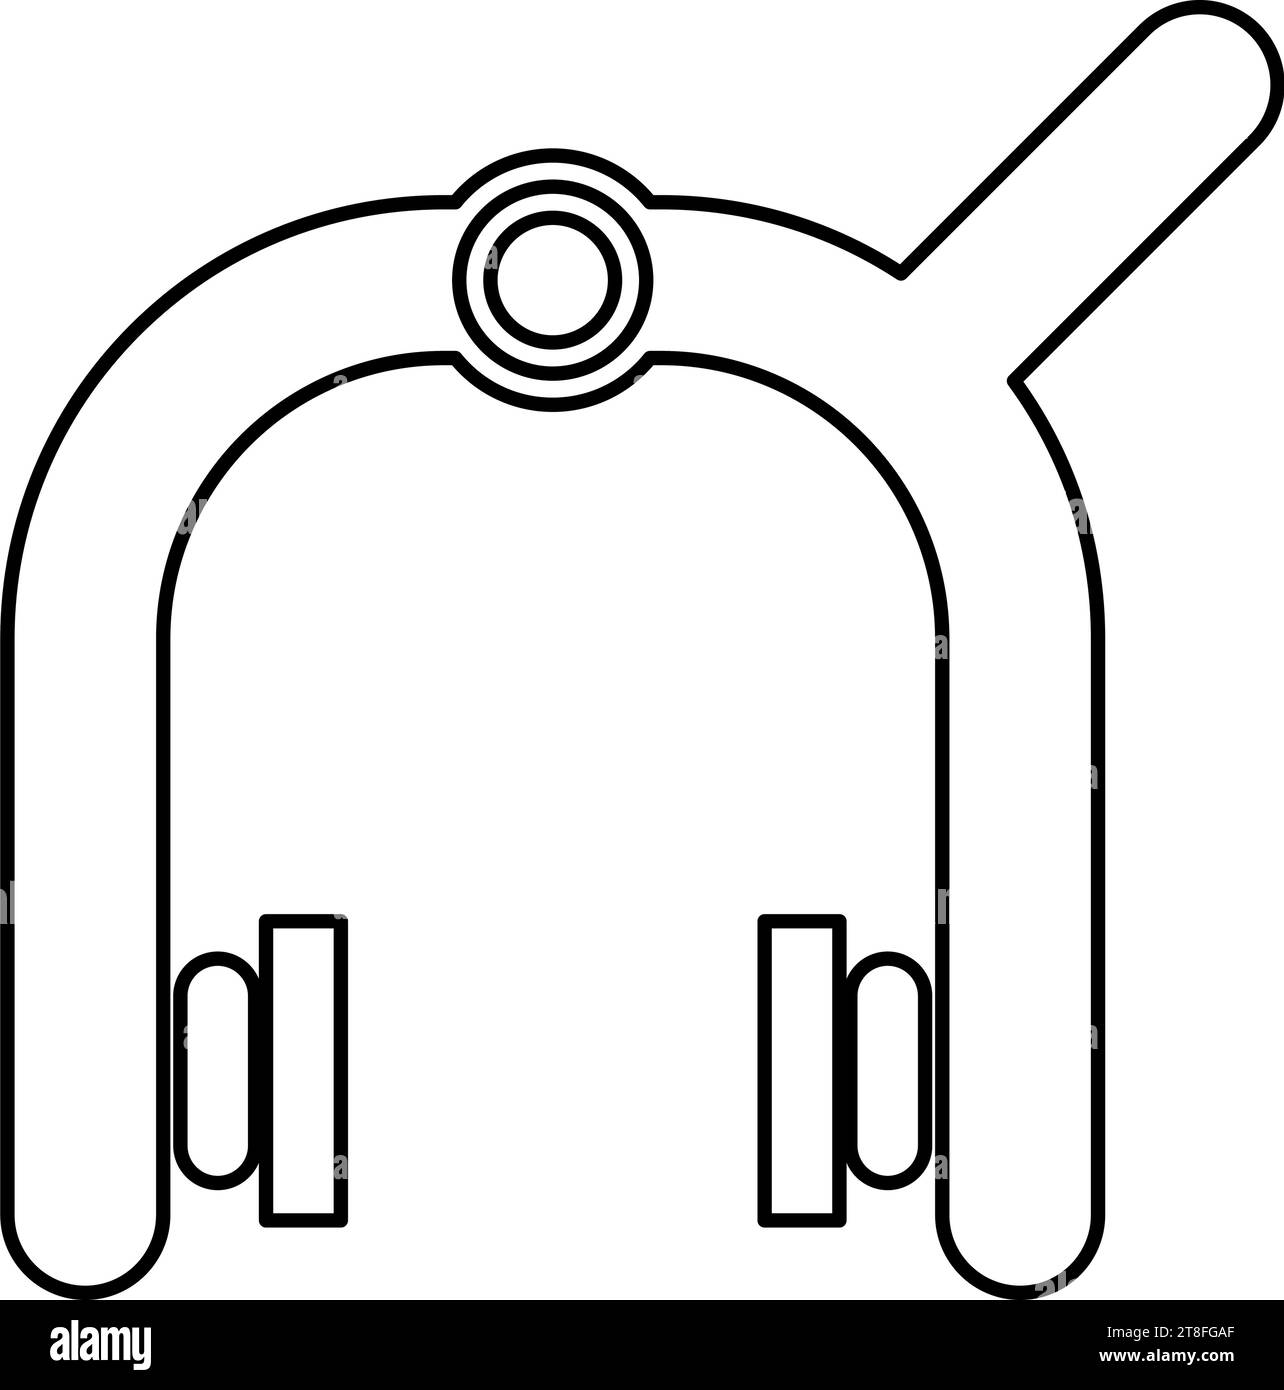 Pastiglie dei freni della bicicletta meccanico cruciale dietro il dispositivo a doppio perno di sicurezza del ciclista profilo icona colore nero illustrazione vettoriale immagine sottile piatta Illustrazione Vettoriale